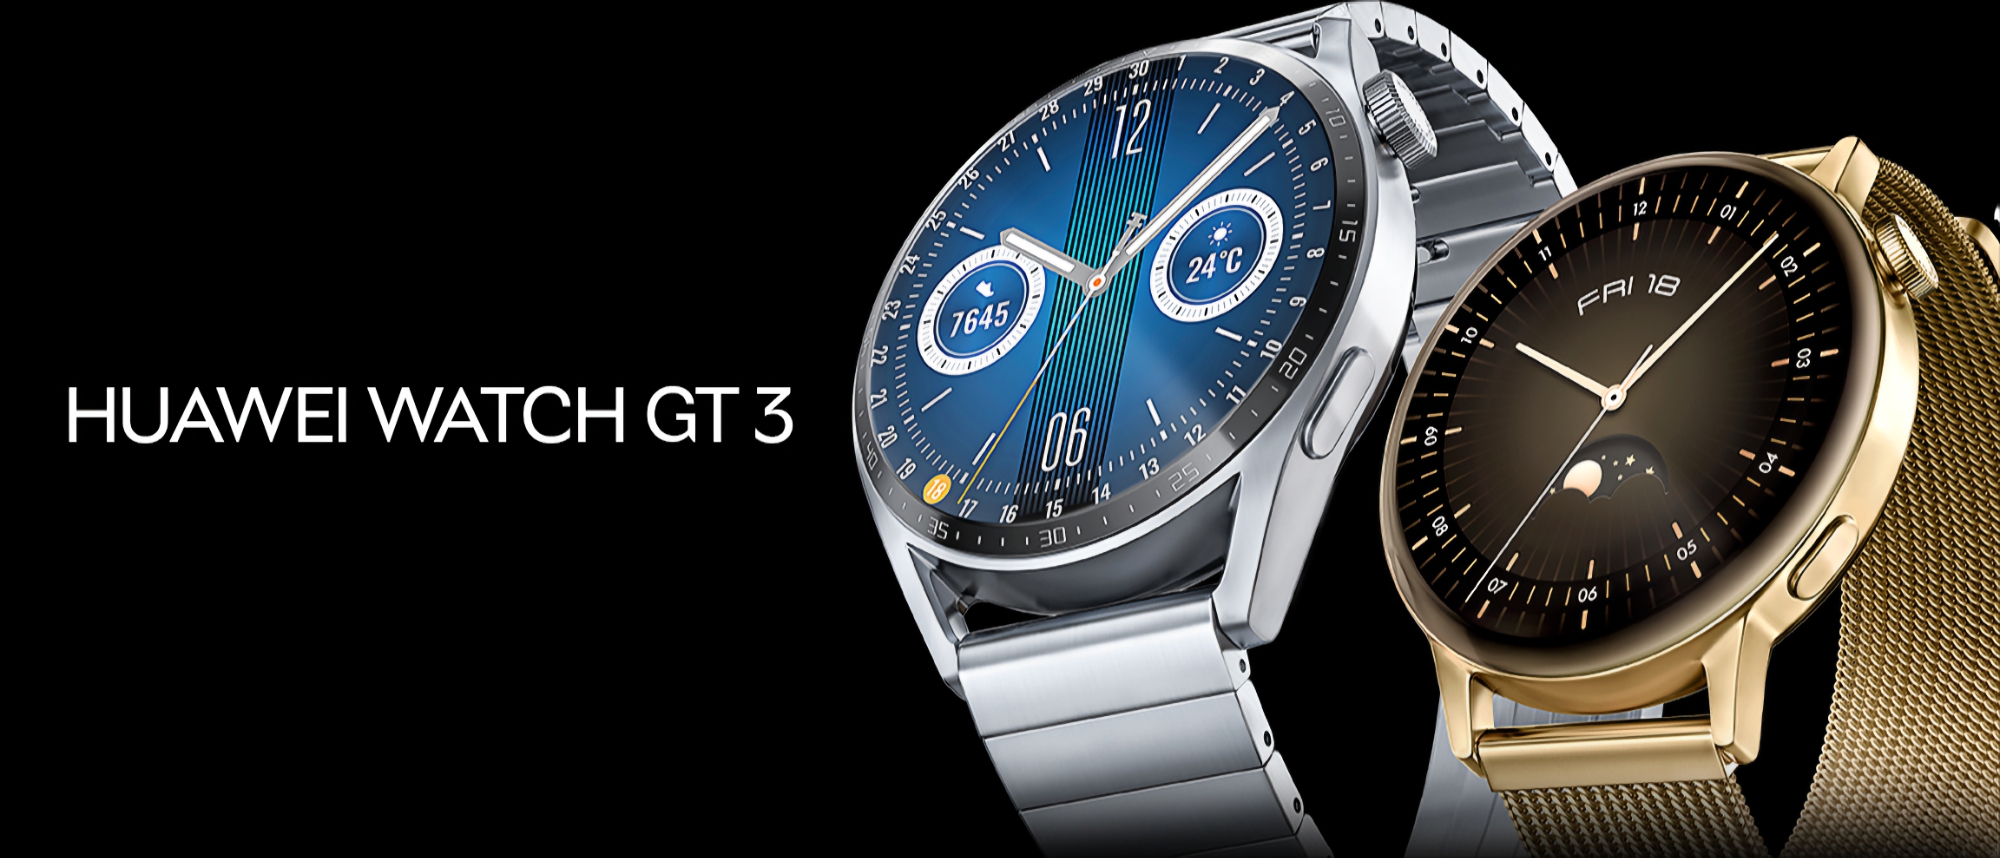 Smartwatch Huawei Watch GT 3 otrzymuje nową aktualizację oprogramowania